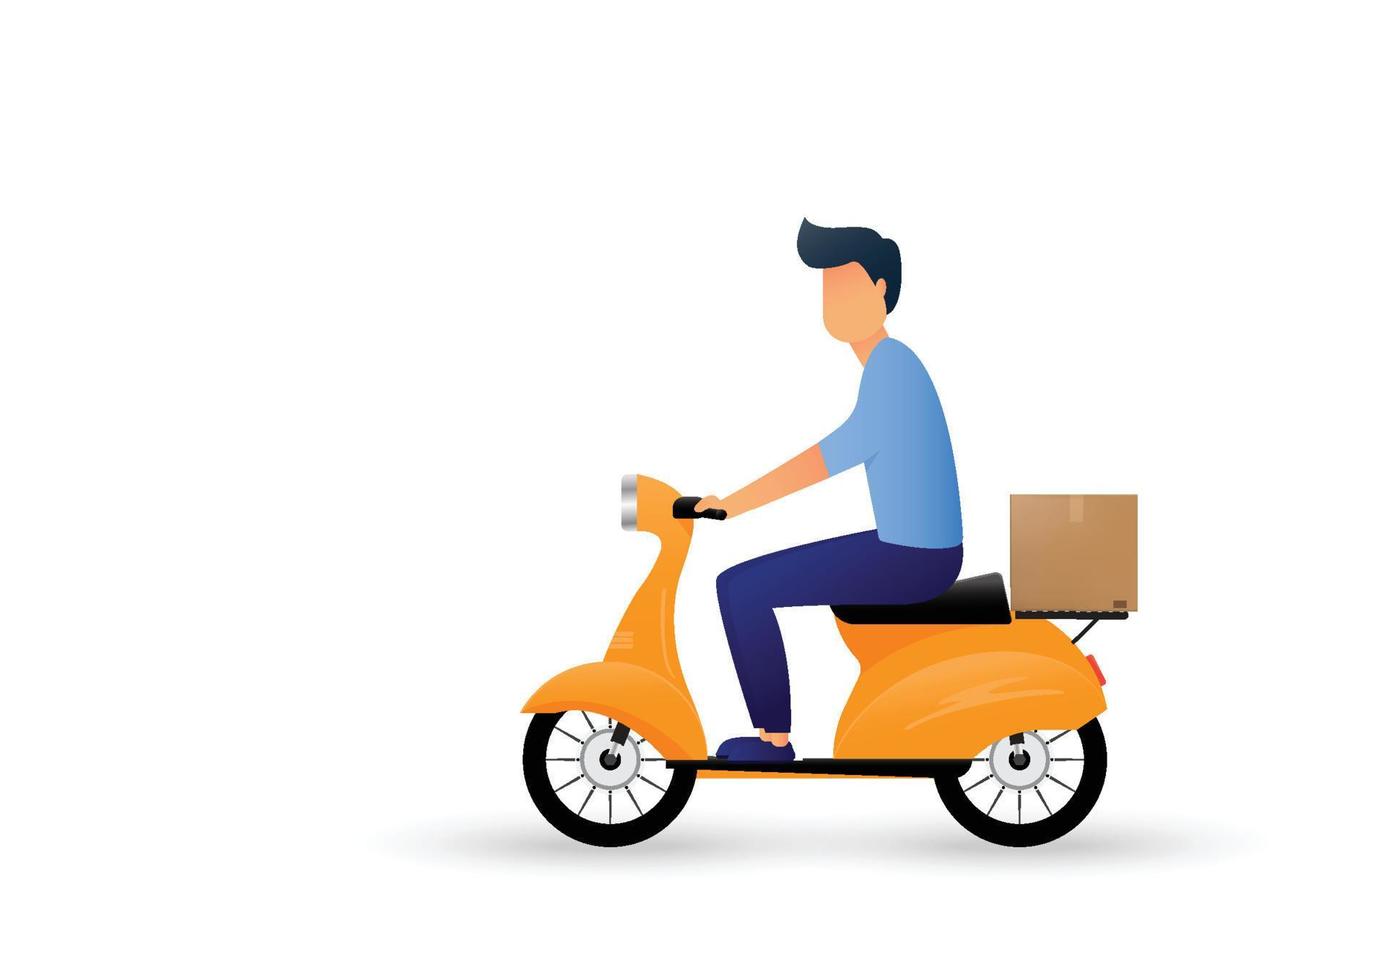 livreur tour caricature de moto scooter. livraison express. illustration vectorielle vecteur